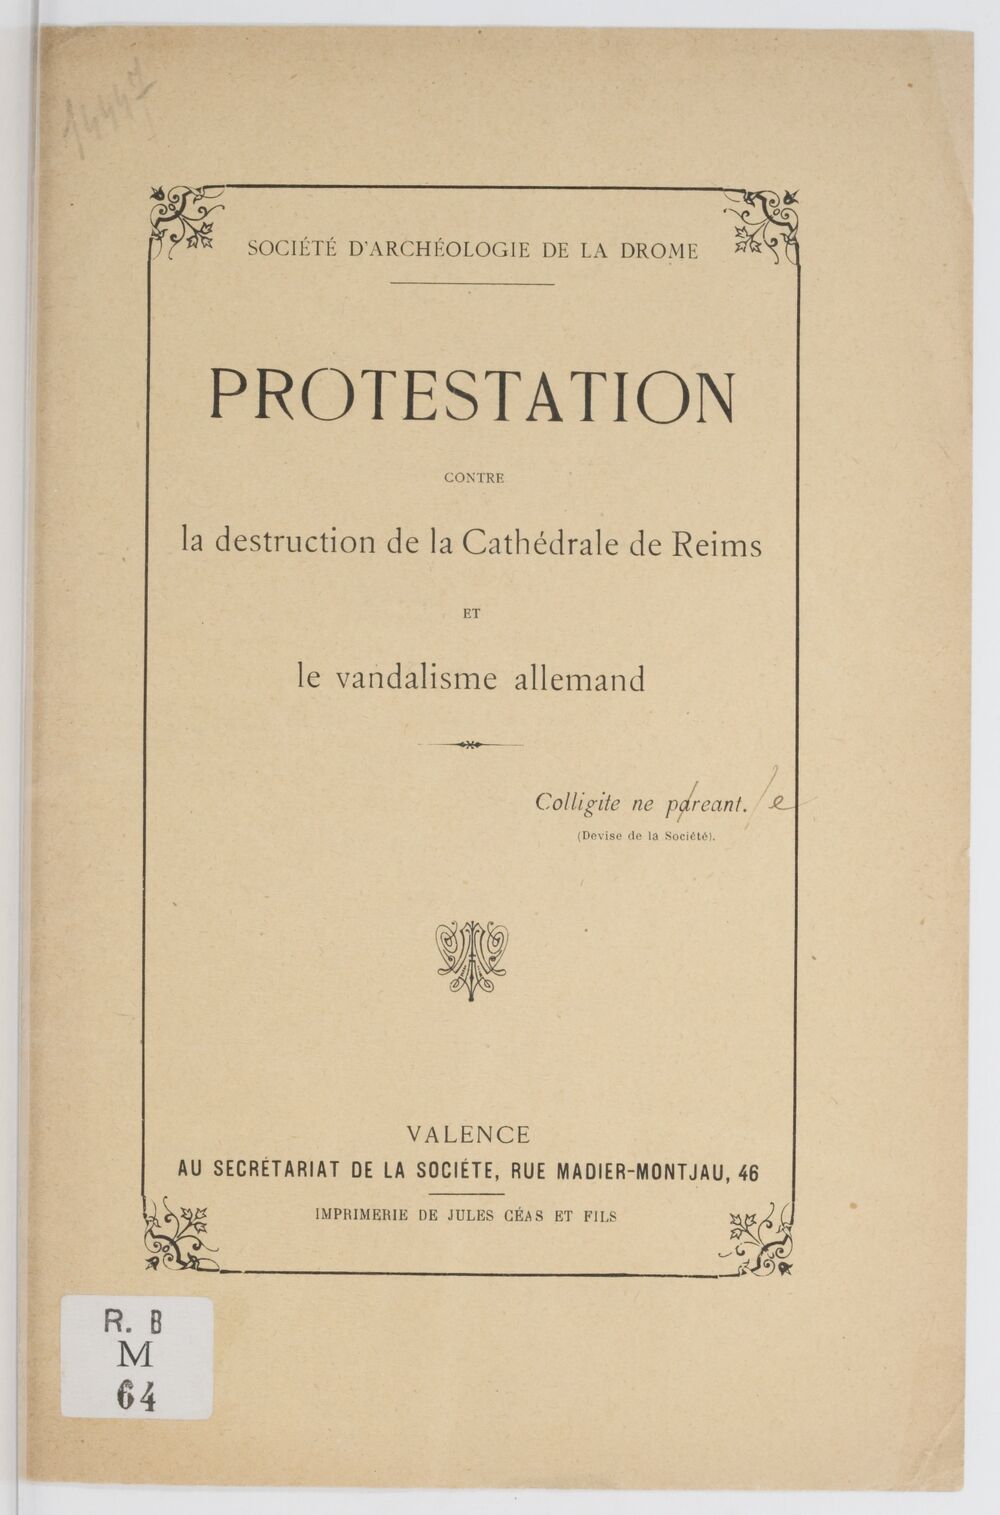 Protestation contre la destruction de la cathédrale de Reims et le vandalisme allemand / Société d'archéologie de la Drôme